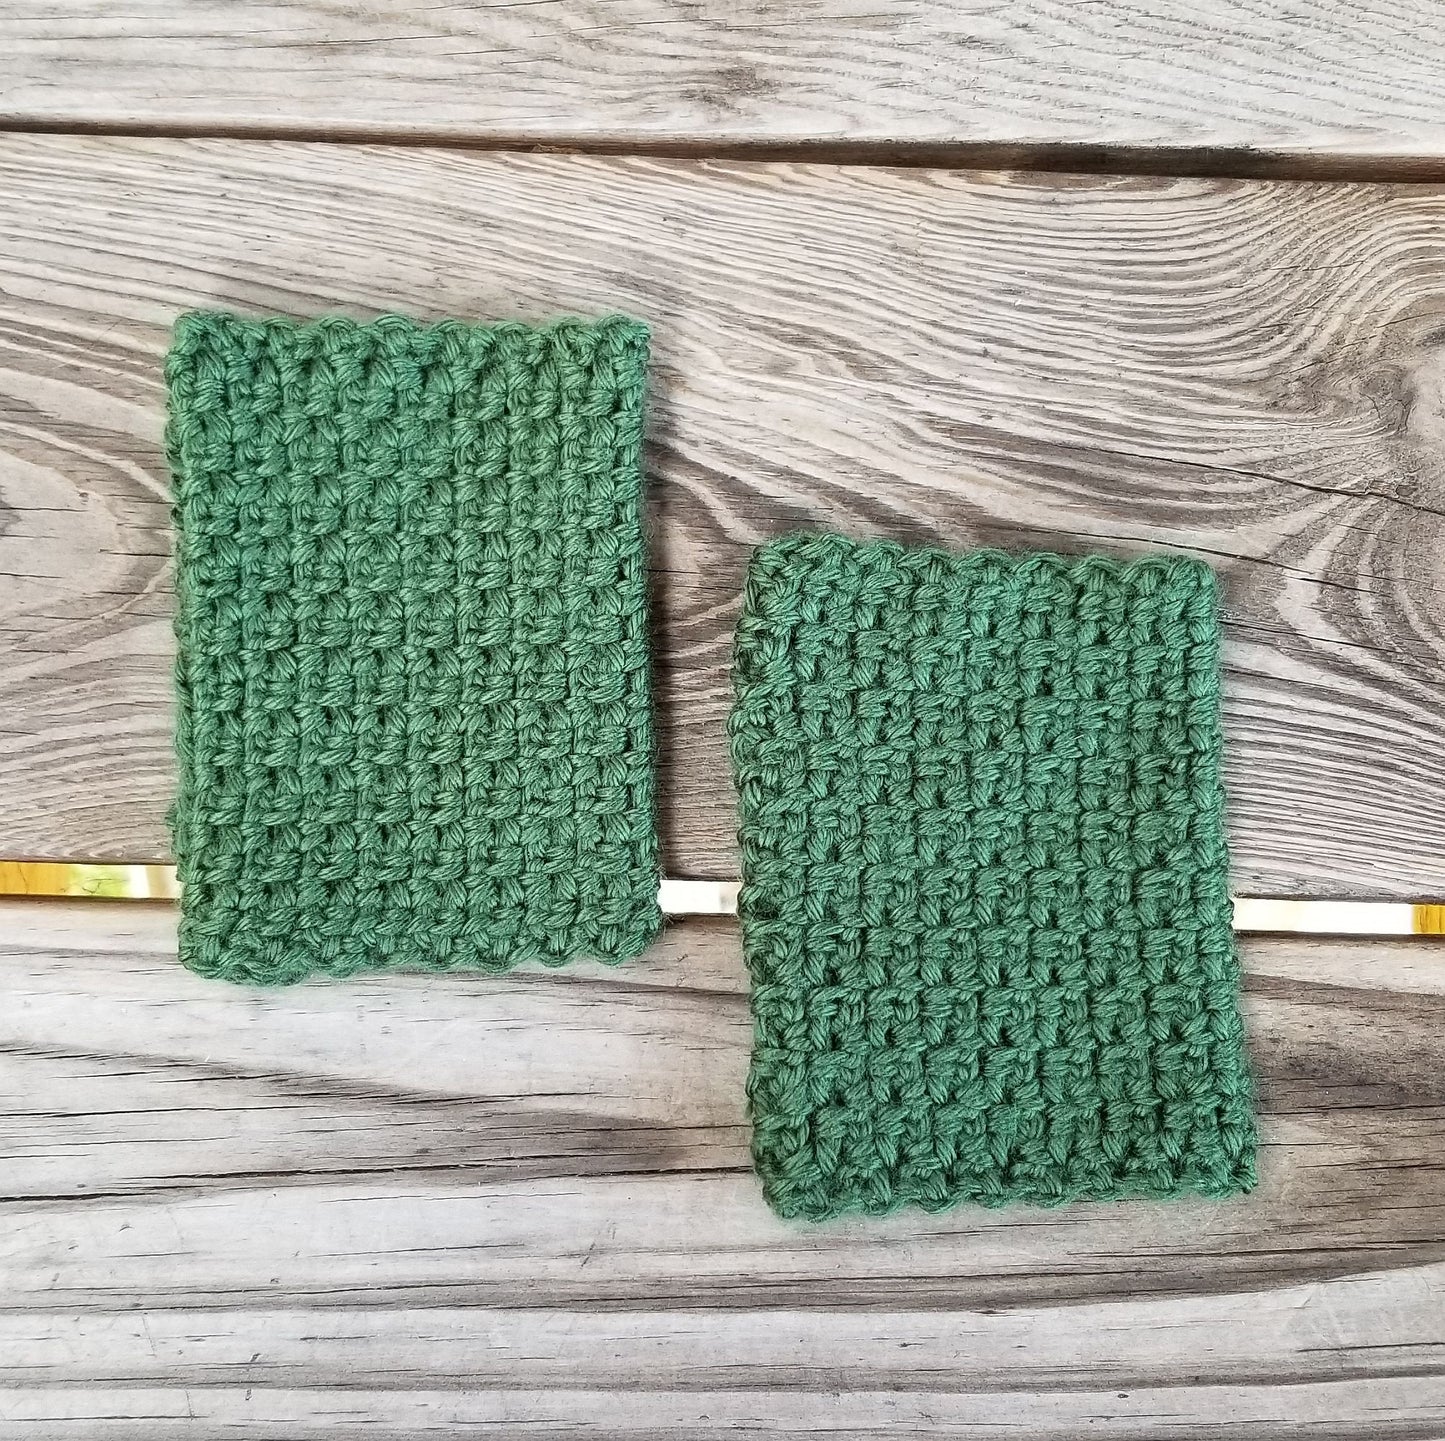 Woven Fingerless Gloves Crochet Pattern PDF